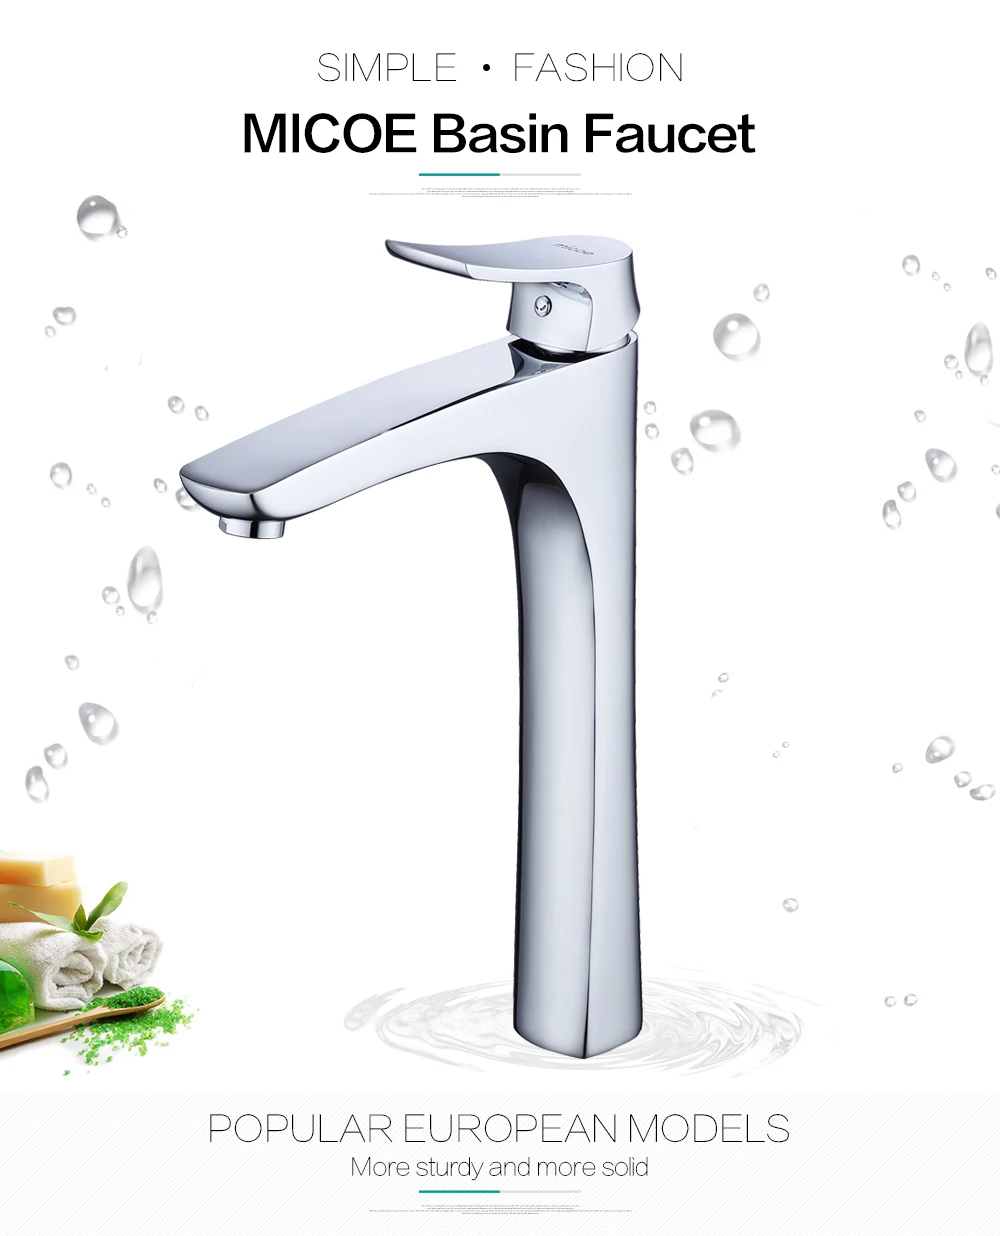 Micoe кран для раковины, кран для ванной комнаты, кран для раковины на бортике, водопад, хромированный кран для горячей и холодной воды, современный хромированный кран, H-HC216